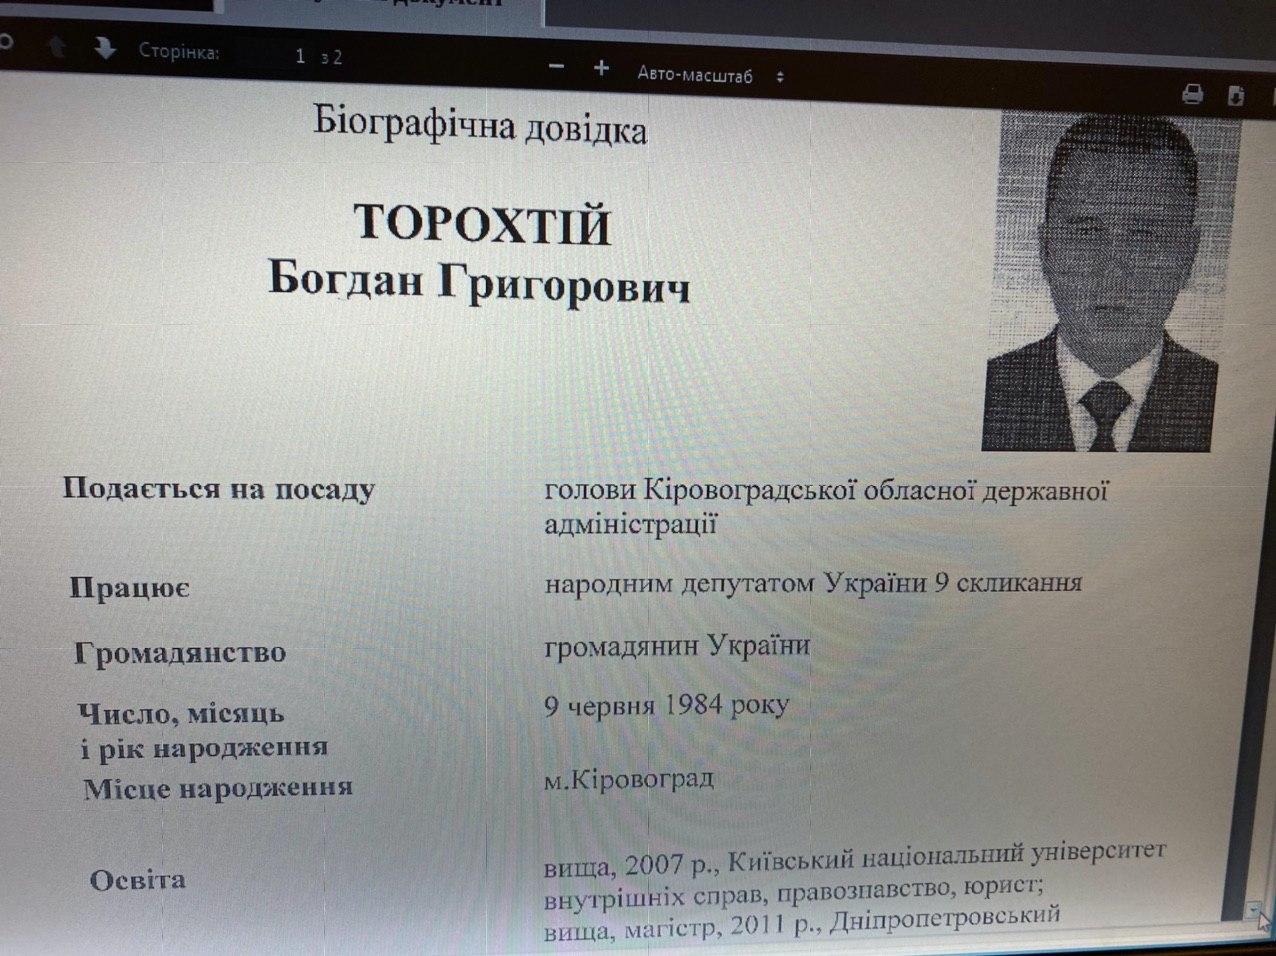 Заявление на должность Торохтия. Фото: Алексей Гончаренко